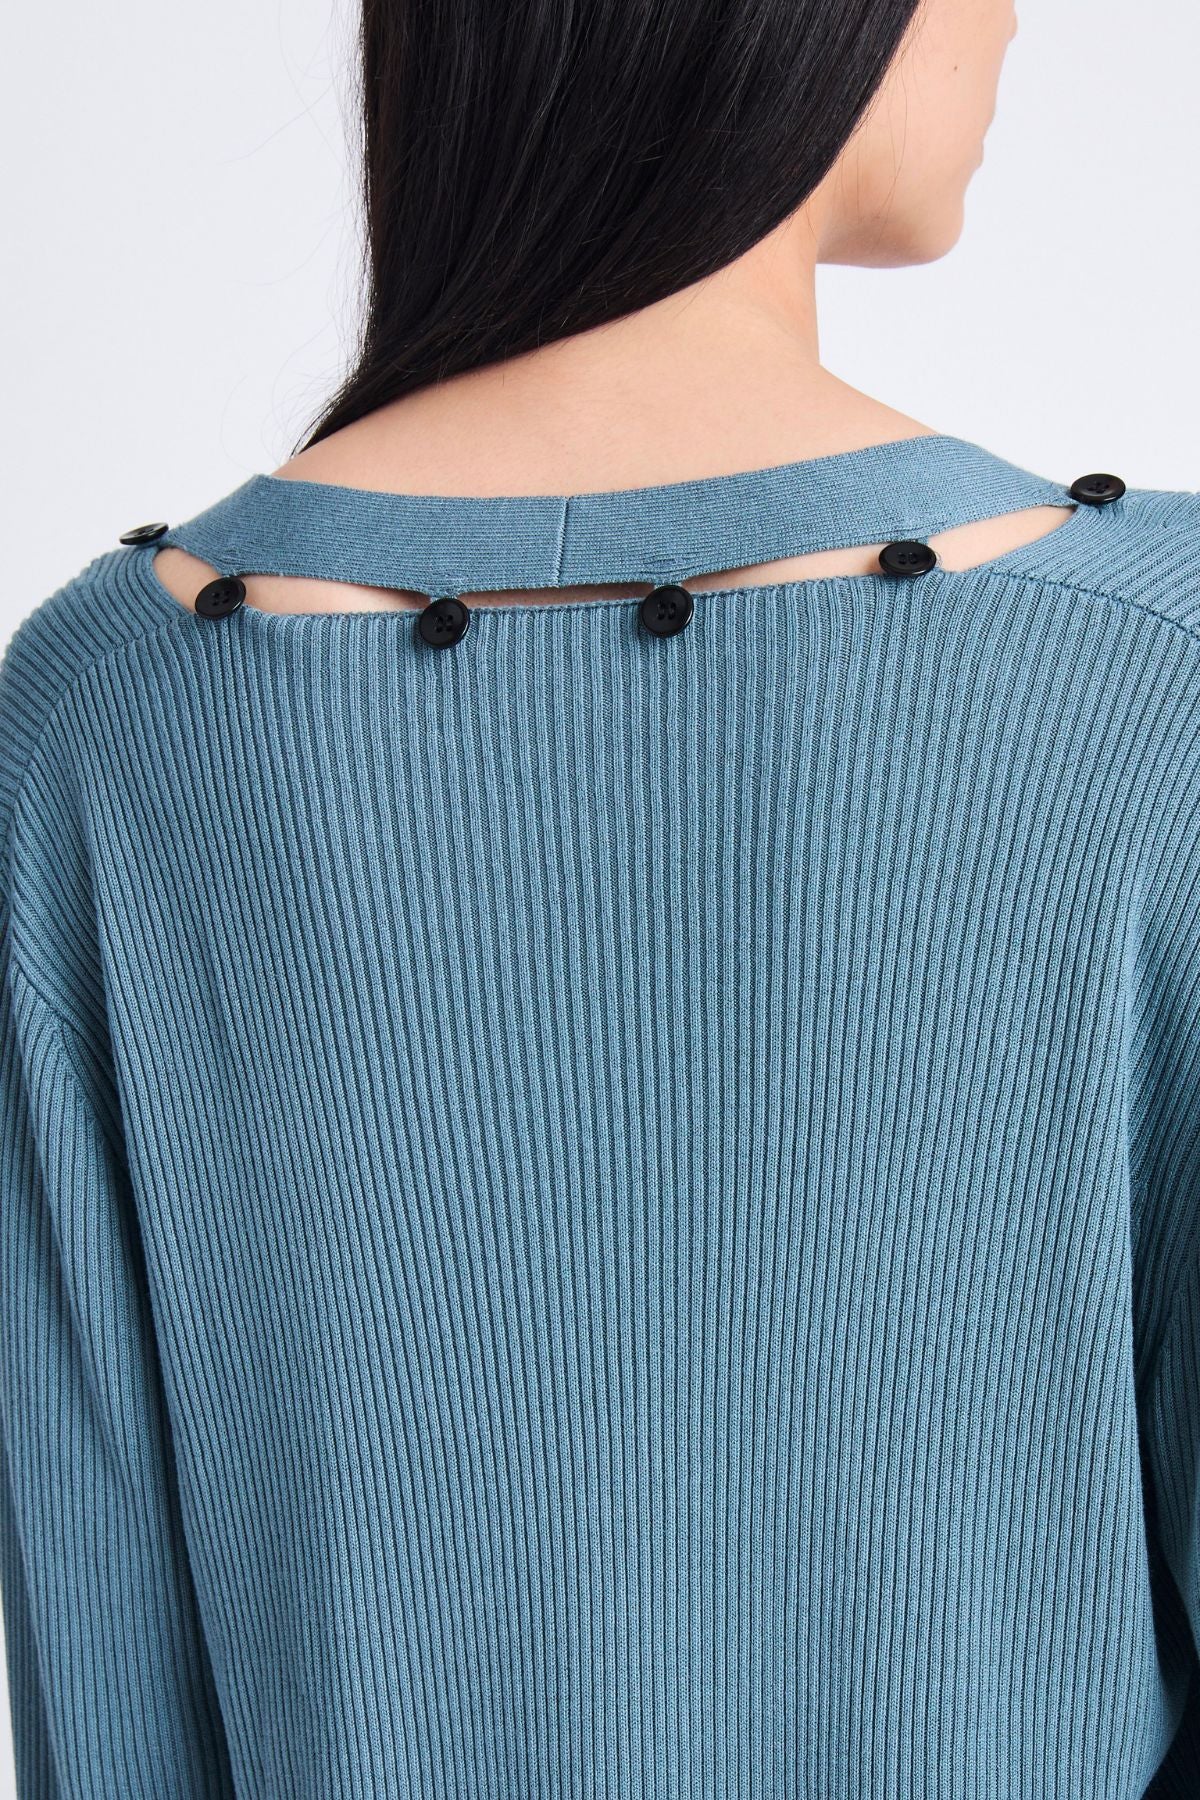 Proenza Schouler White Label Elsie Knit Sweater - Juniper